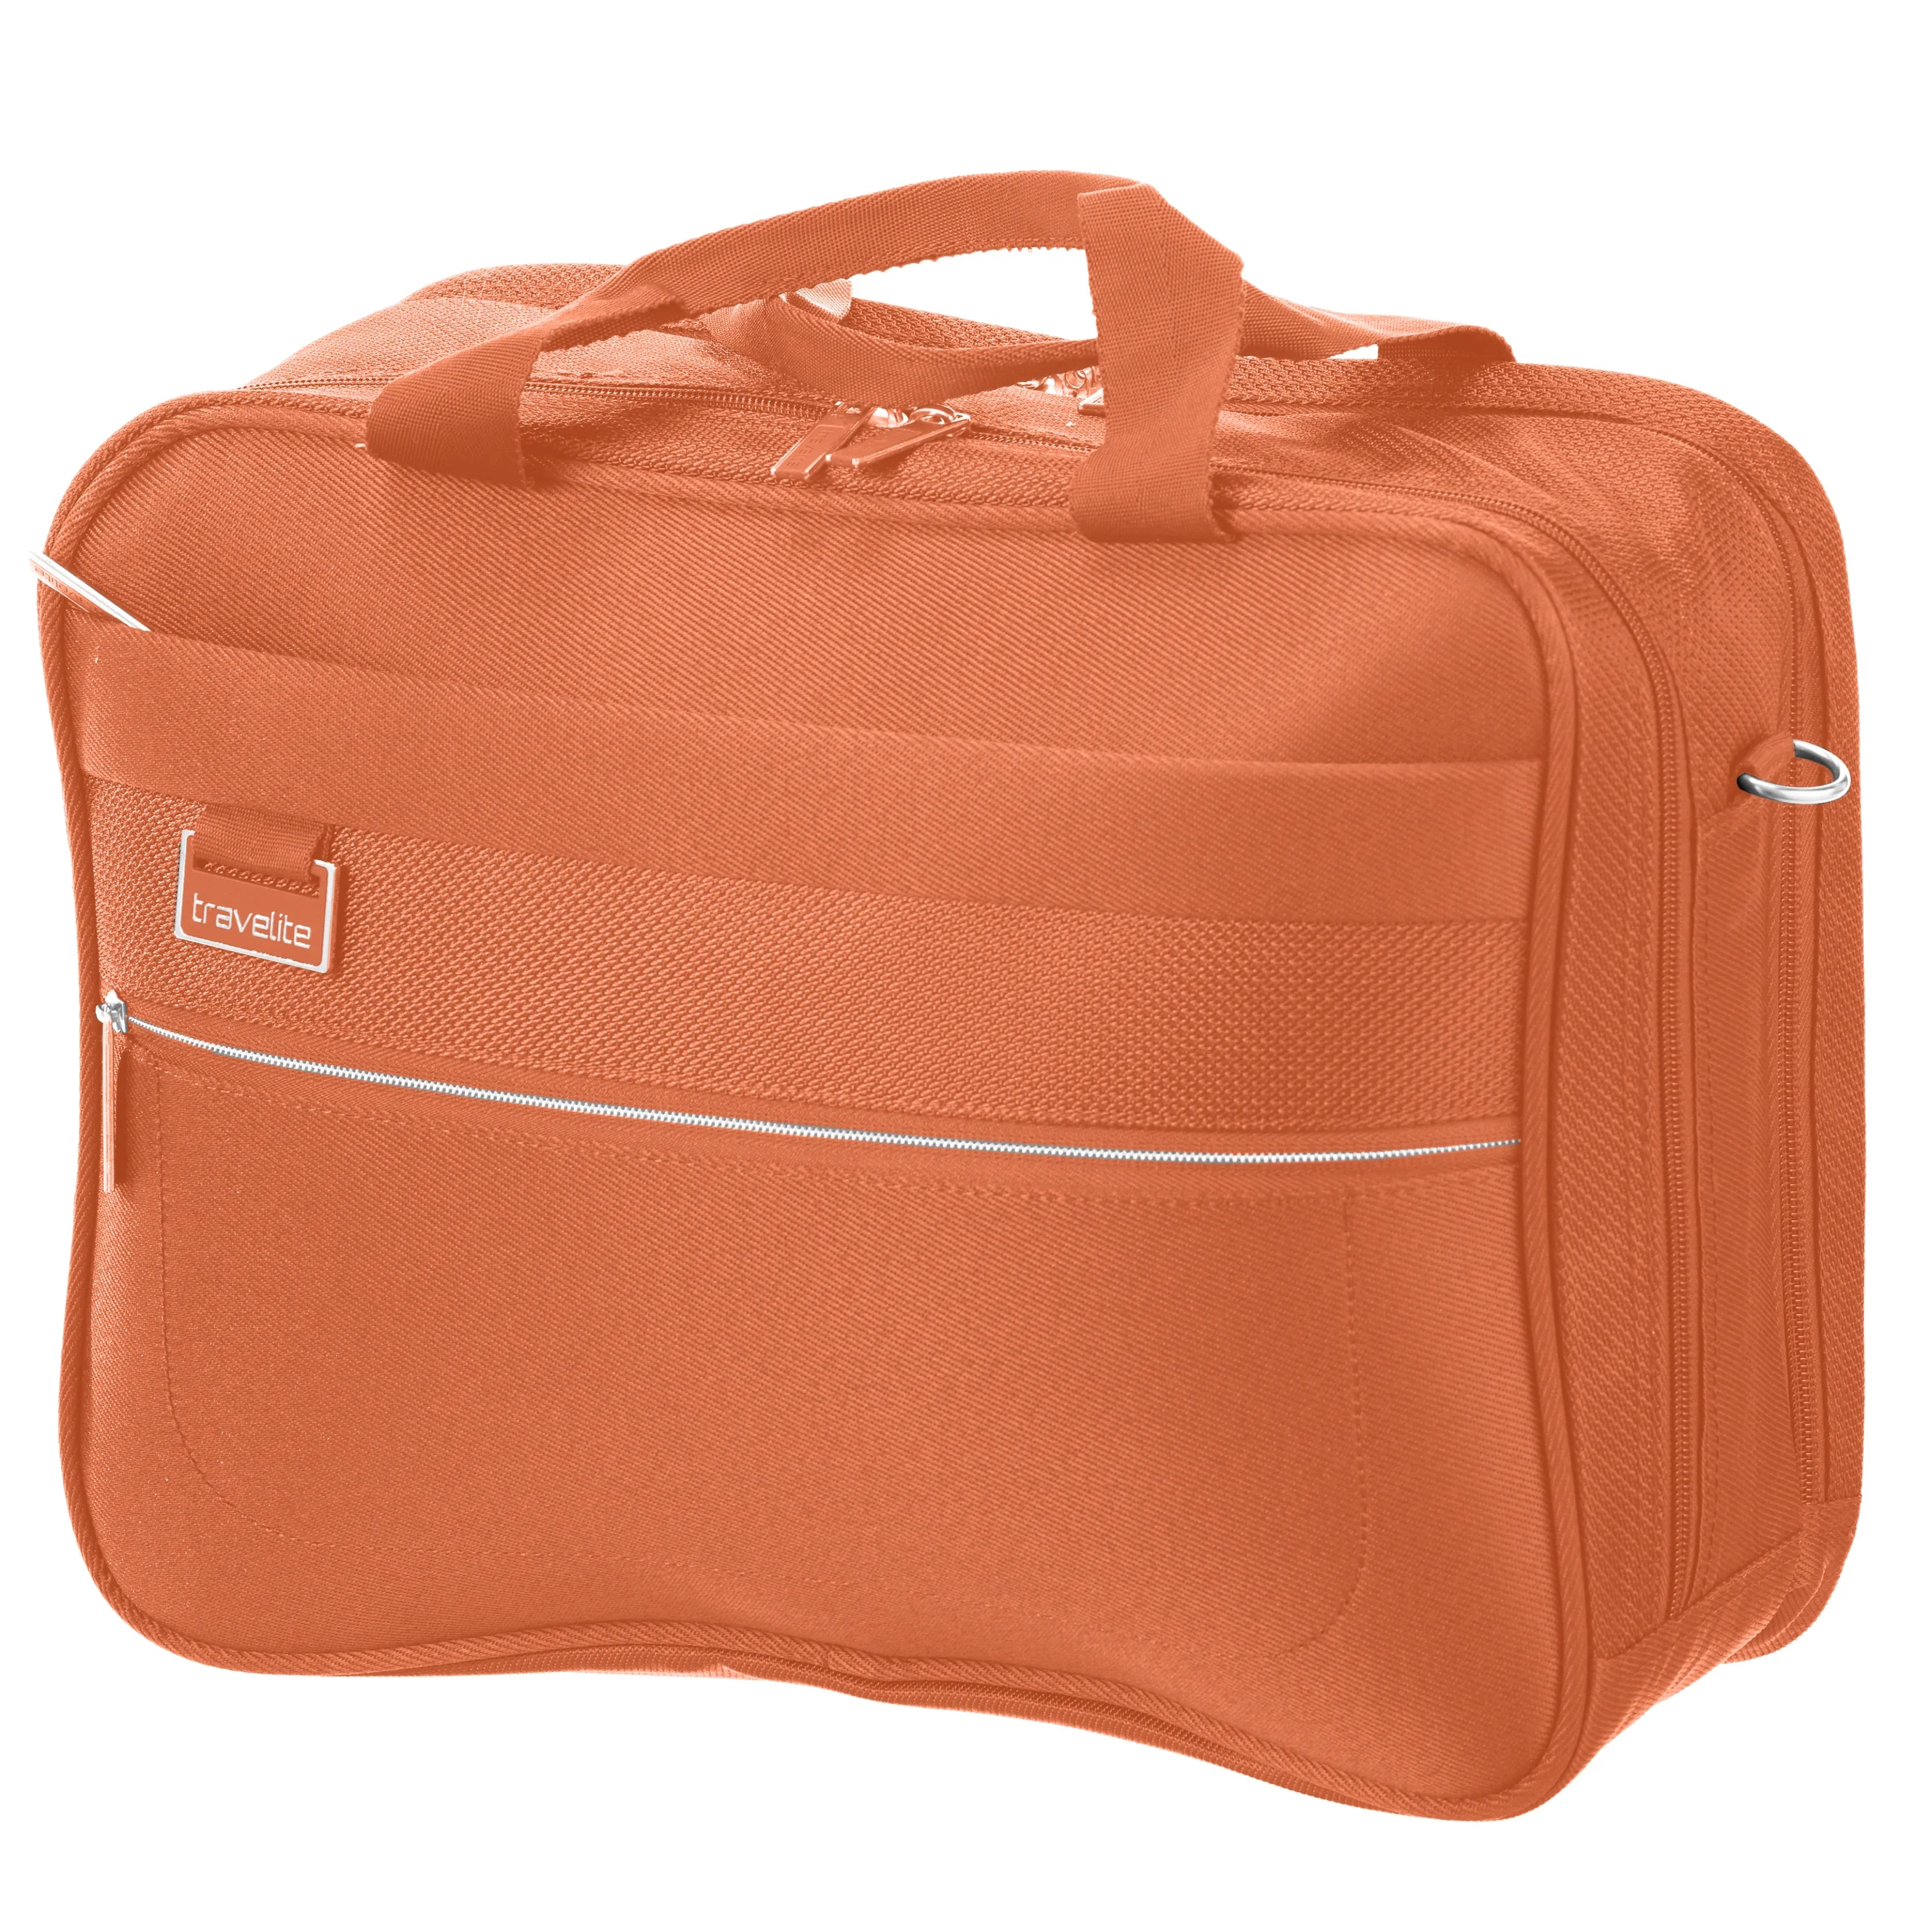 Travelite Miigo boarding bag 40 cm - saffron